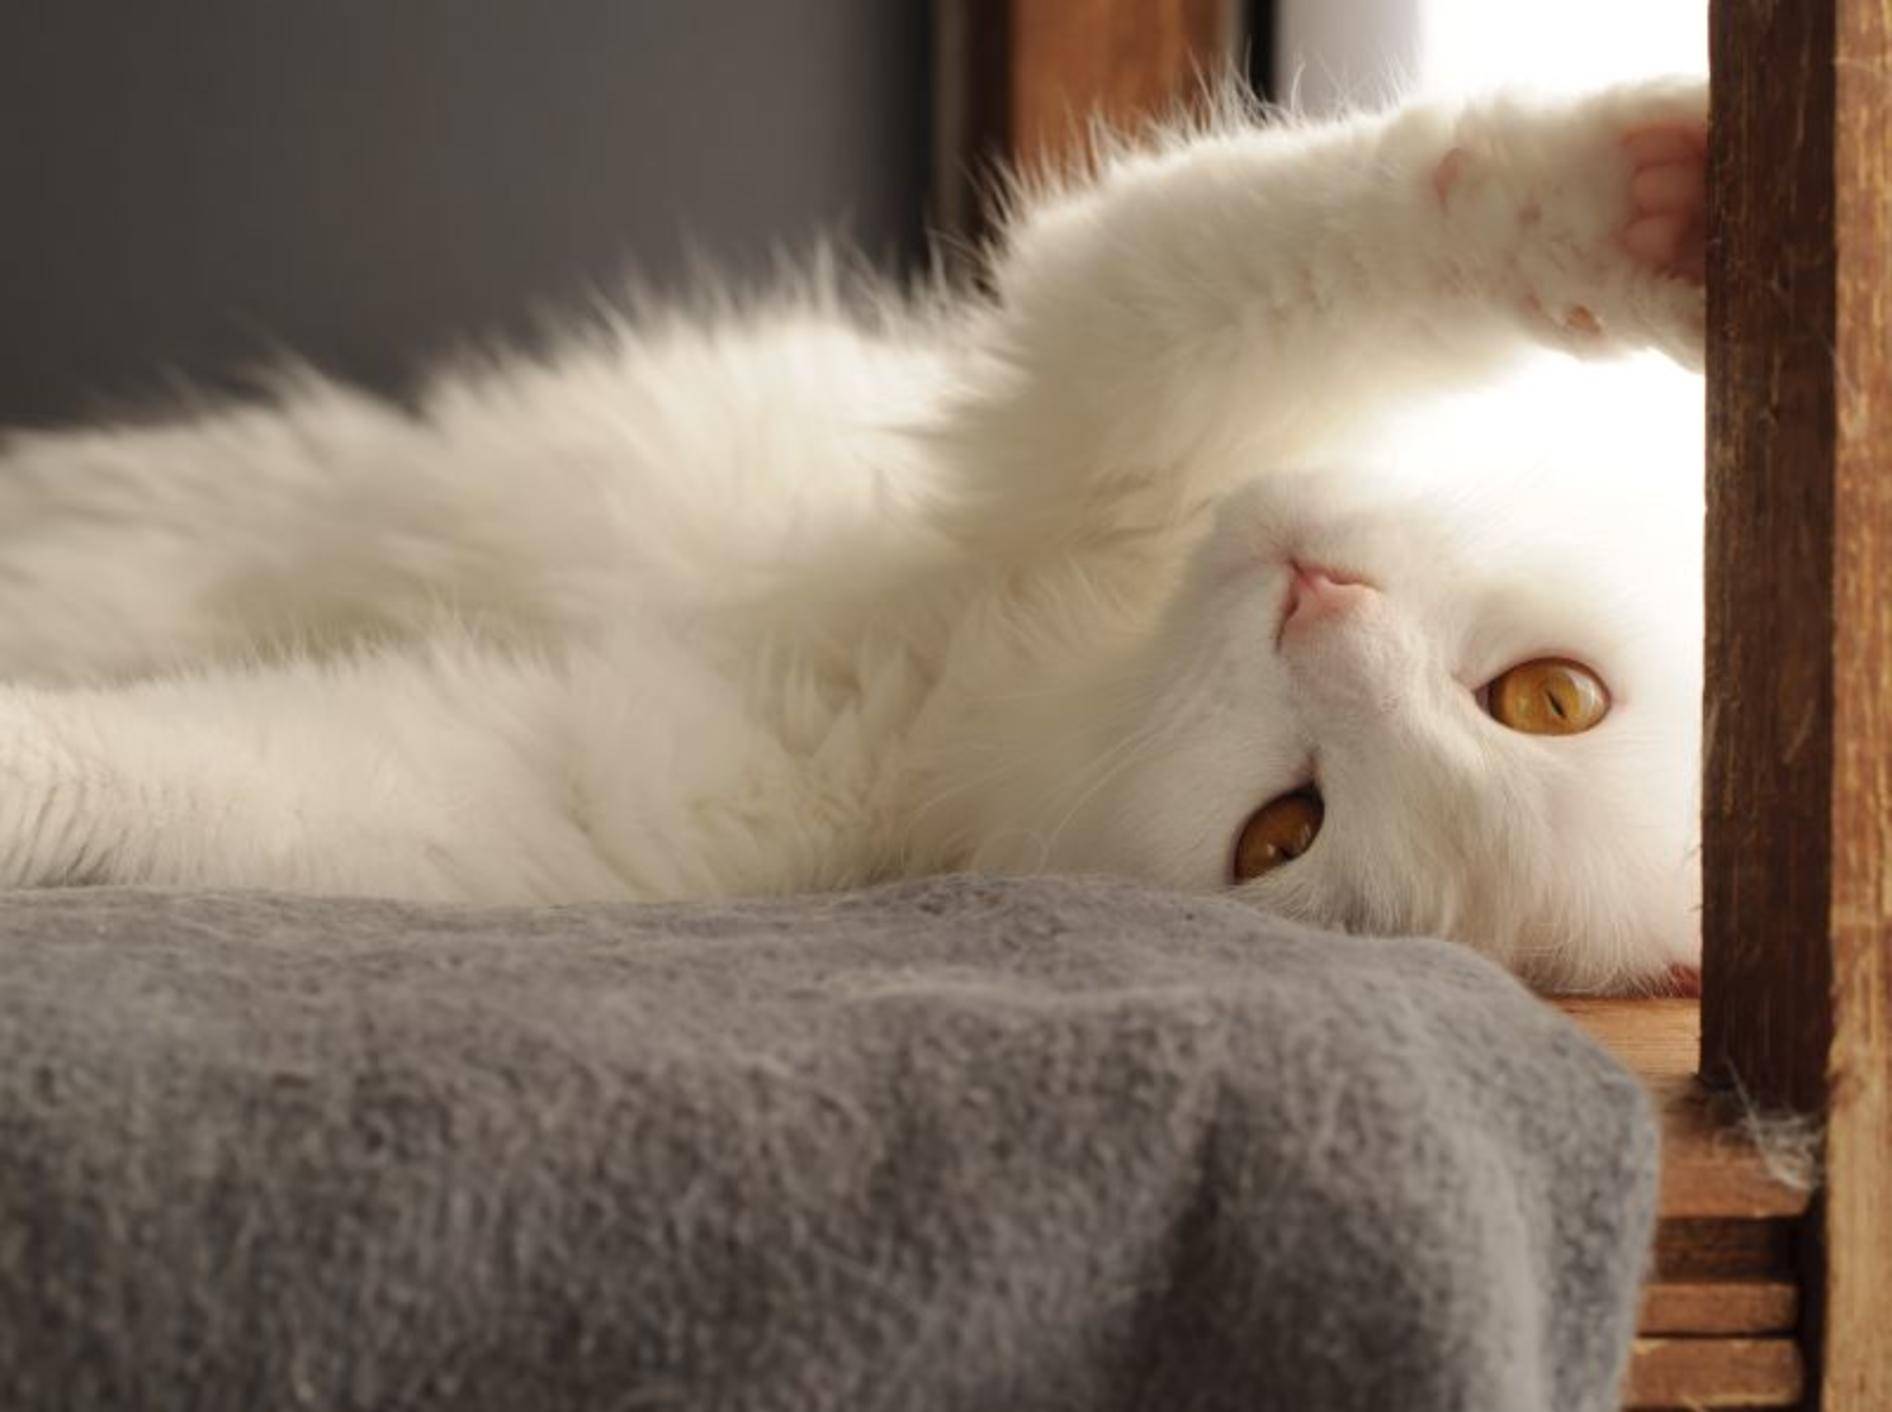 Schnurr, schnurr, schnurr: Wie macht die Katze das eigentlich? – Bild: Shutterstock / Dreambig